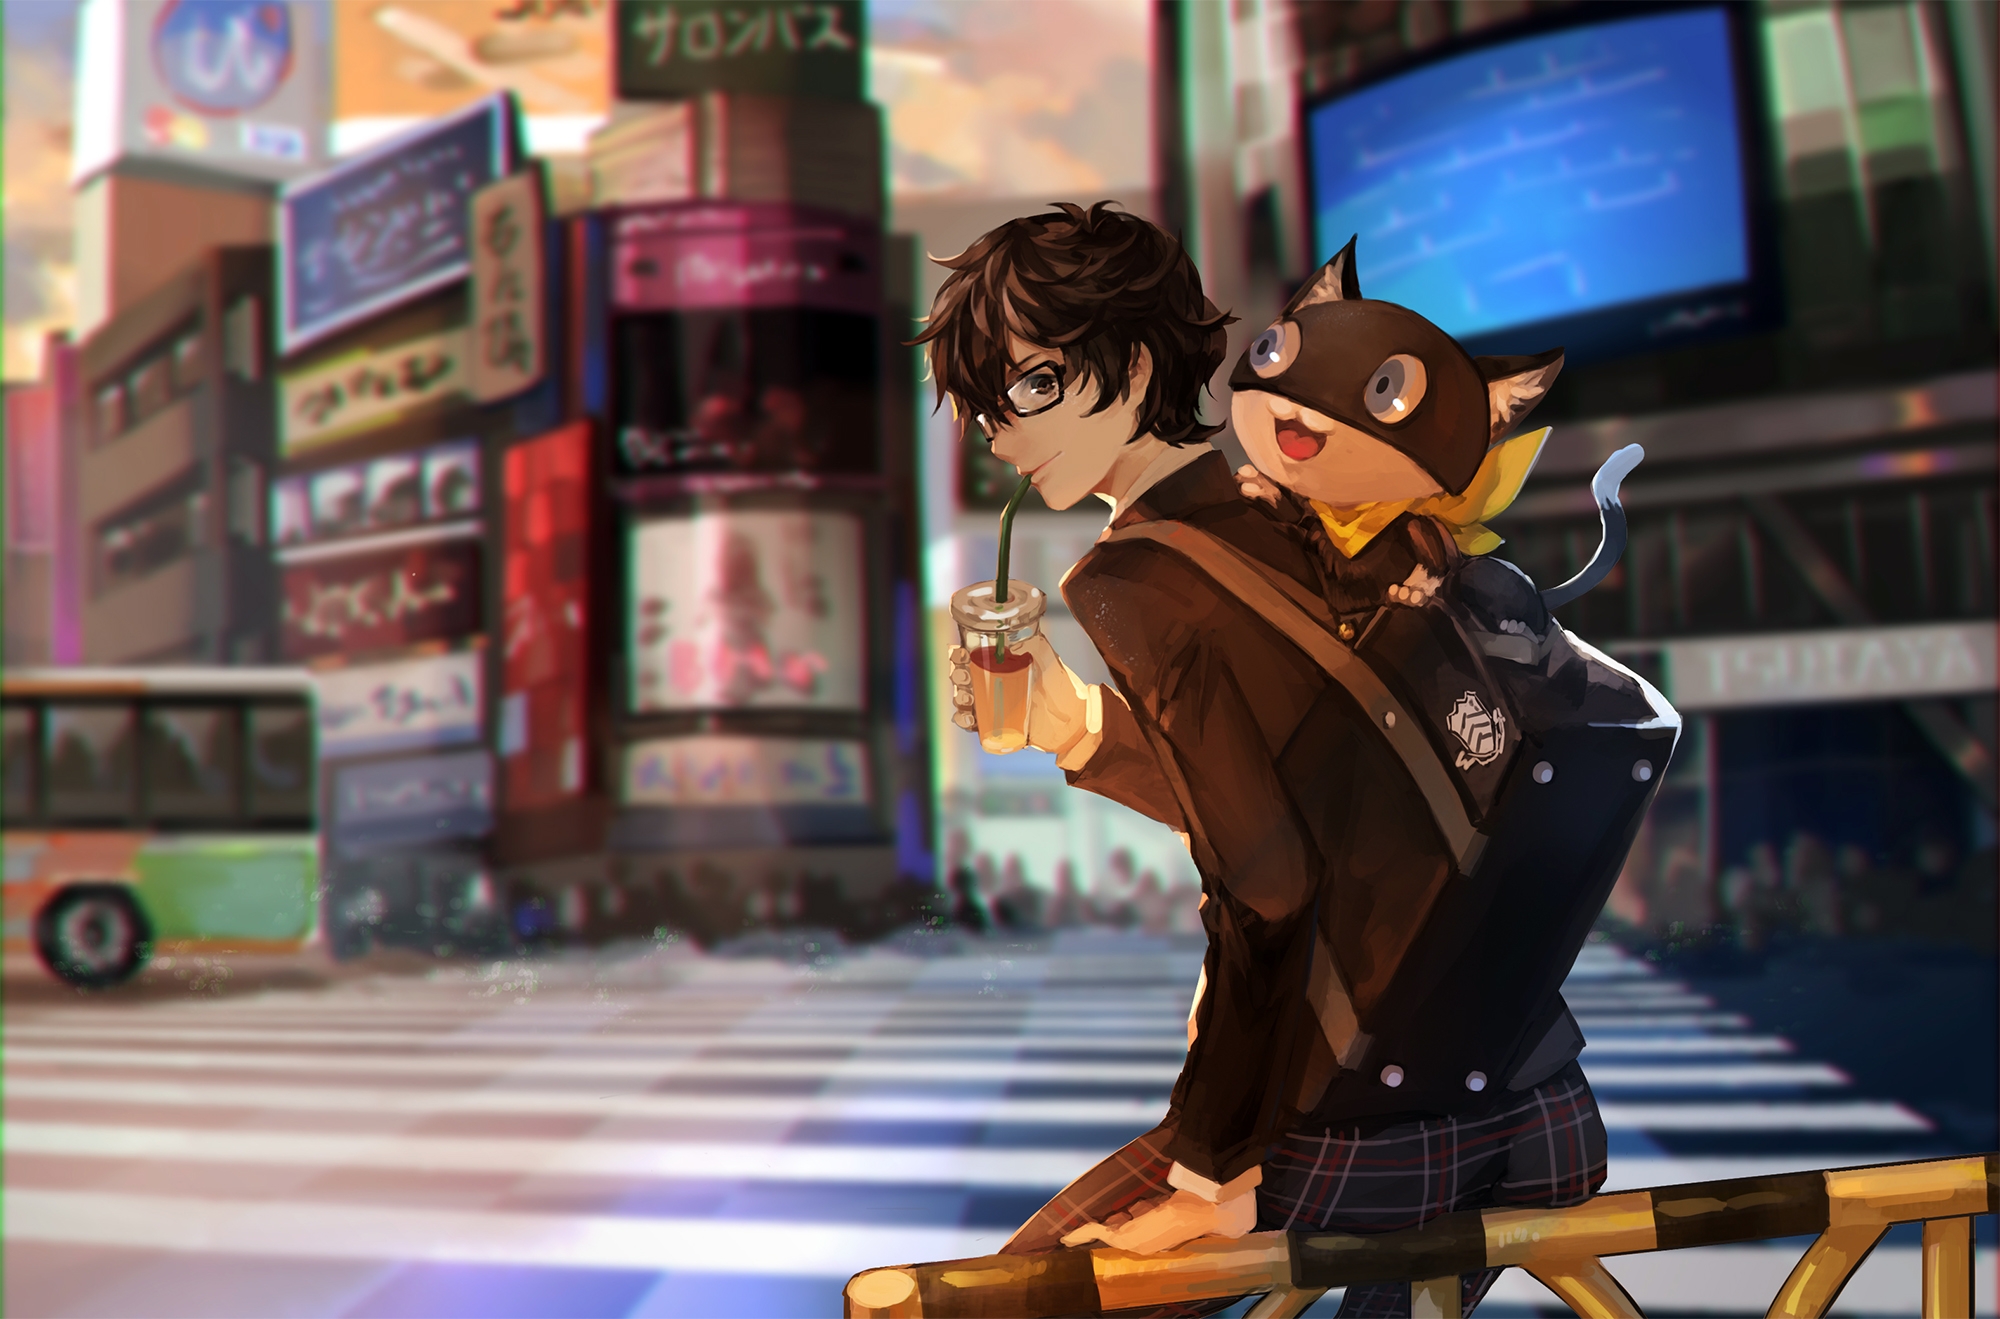 Фото обои persona 5, моргана, курусу акира, очки, питьевой, аниме-игры, город, игры - бесплатные картинки на Fonwall